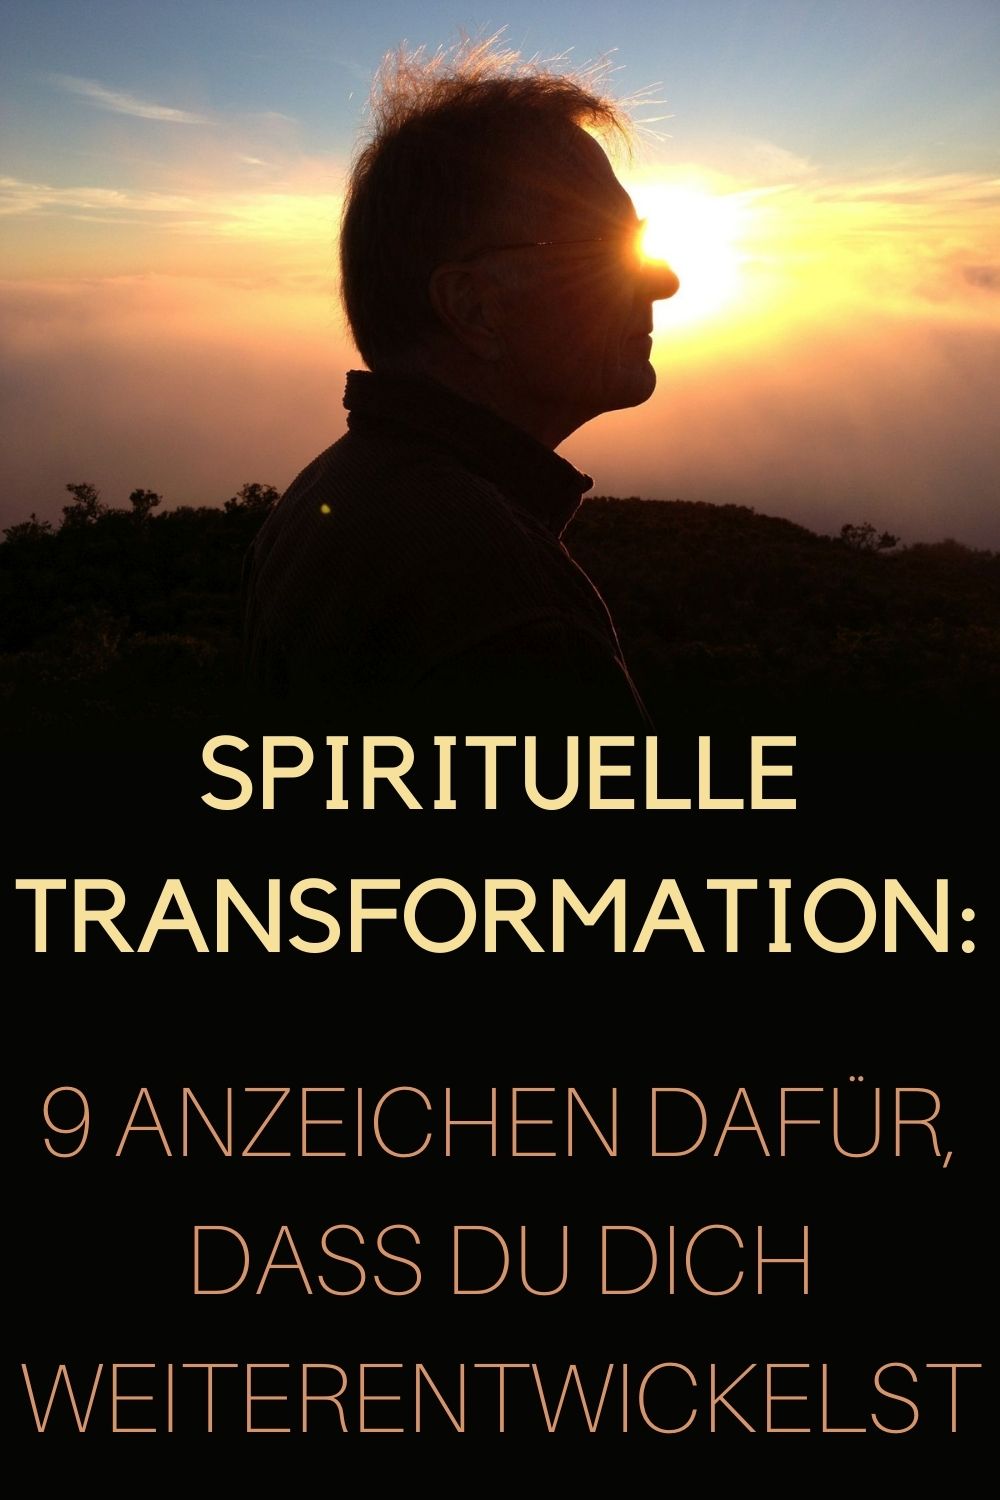 Spirituelle-Transformation-9-Anzeichen-dafuer-dass-du-dich-weiterentwickelst